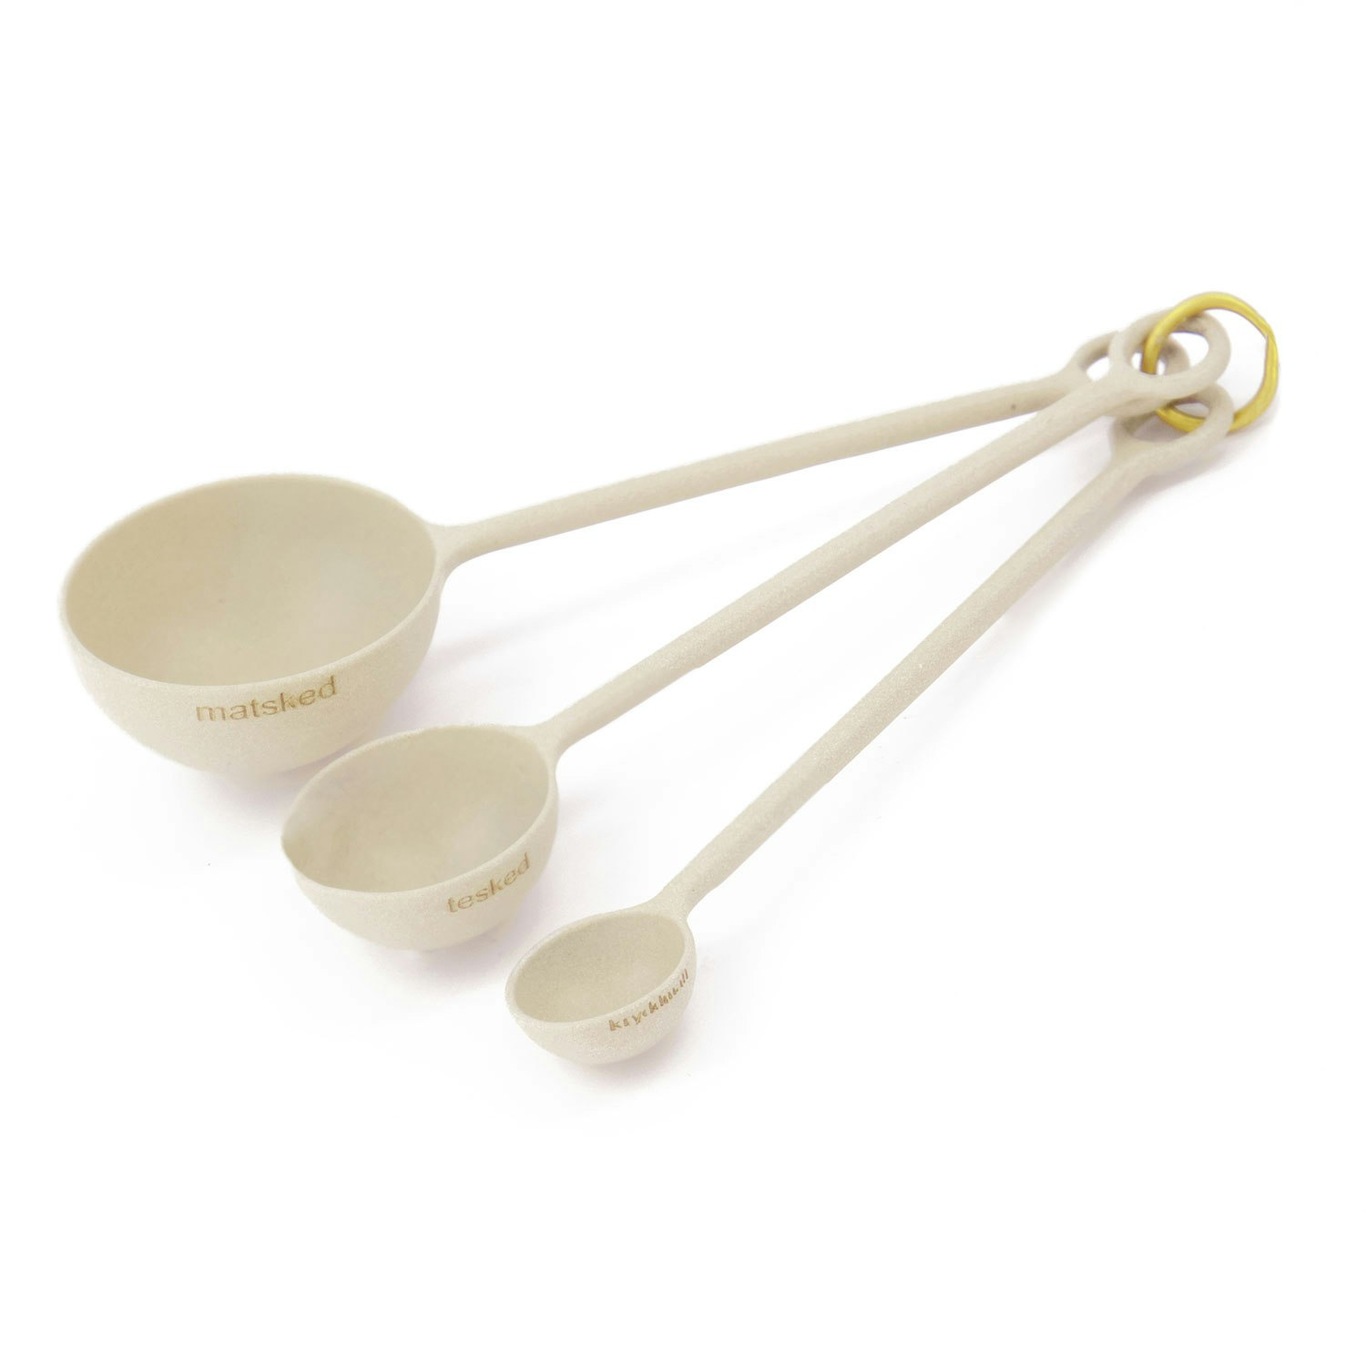 https://royaldesign.com/image/2/ernst-measuring-spoon-set-125-cm-3?w=800&quality=80